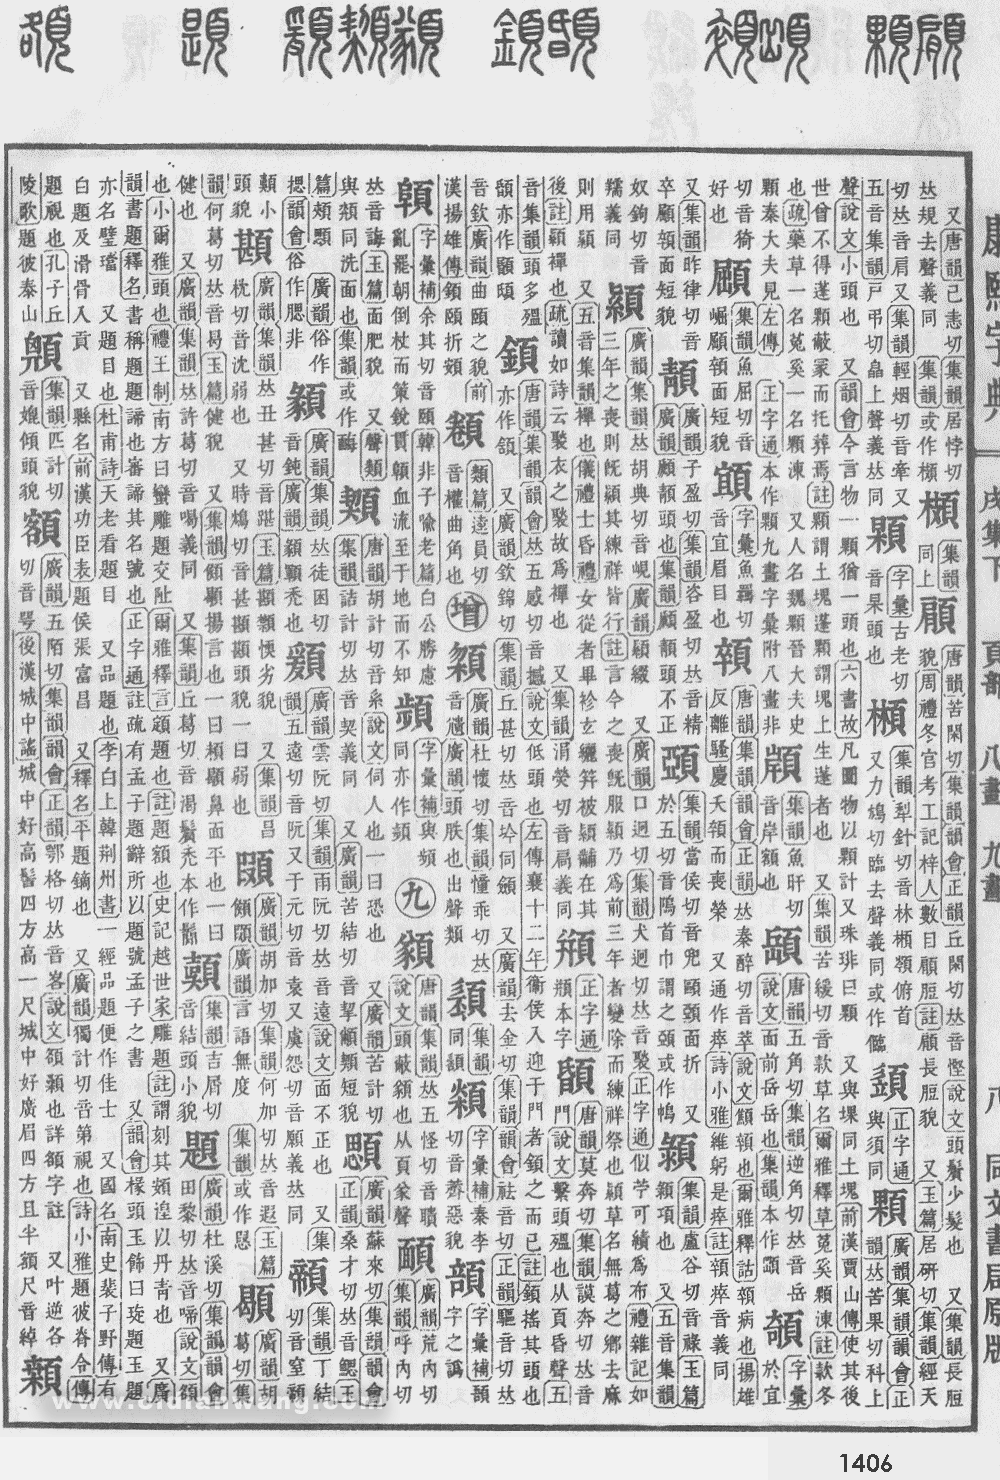 康熙字典掃描版第1406頁